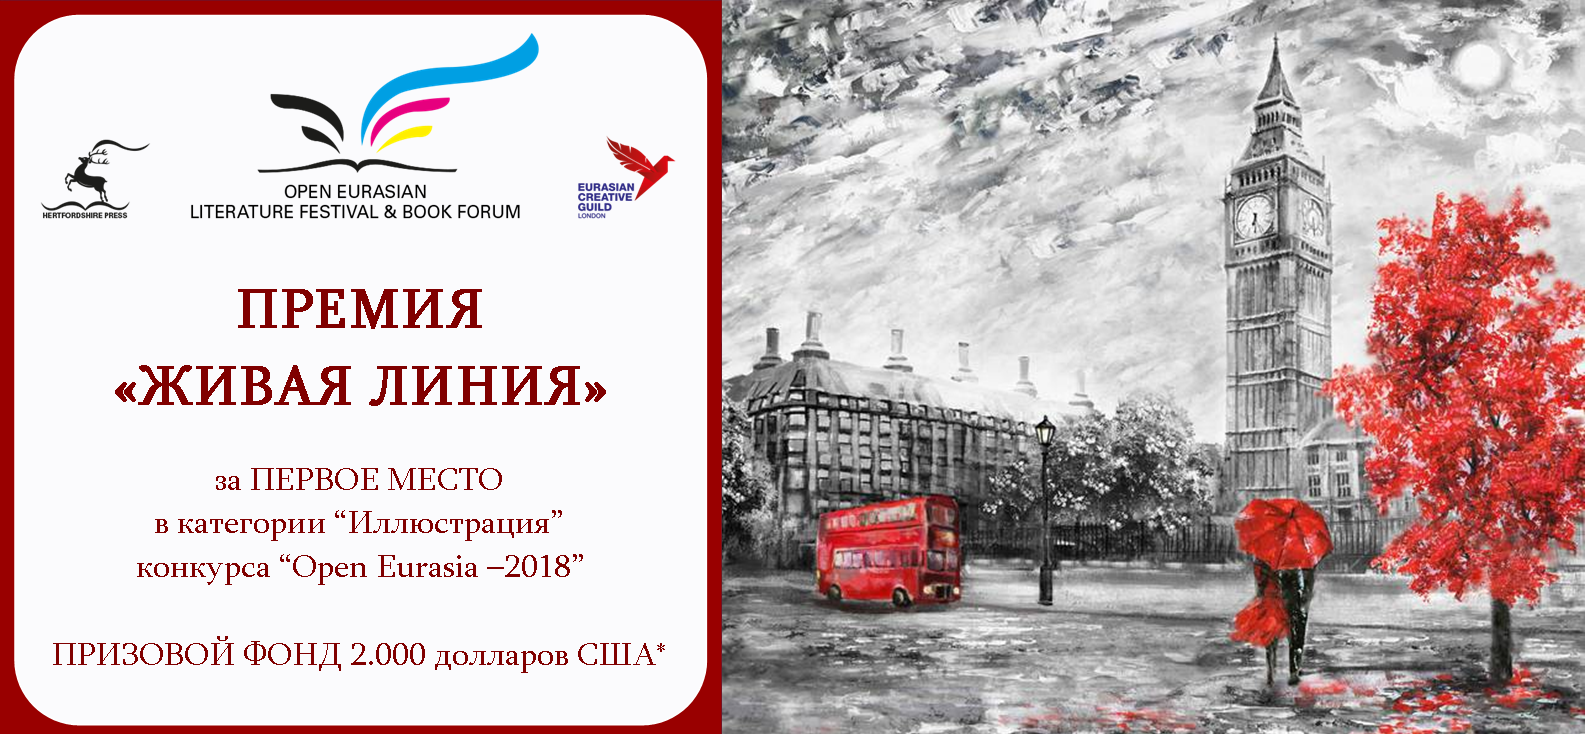 Конкурс откройте книга. «Open Eurasian book forum & Literature Festival». Международная премия “Eurasia 2023”. Живая линия книга.